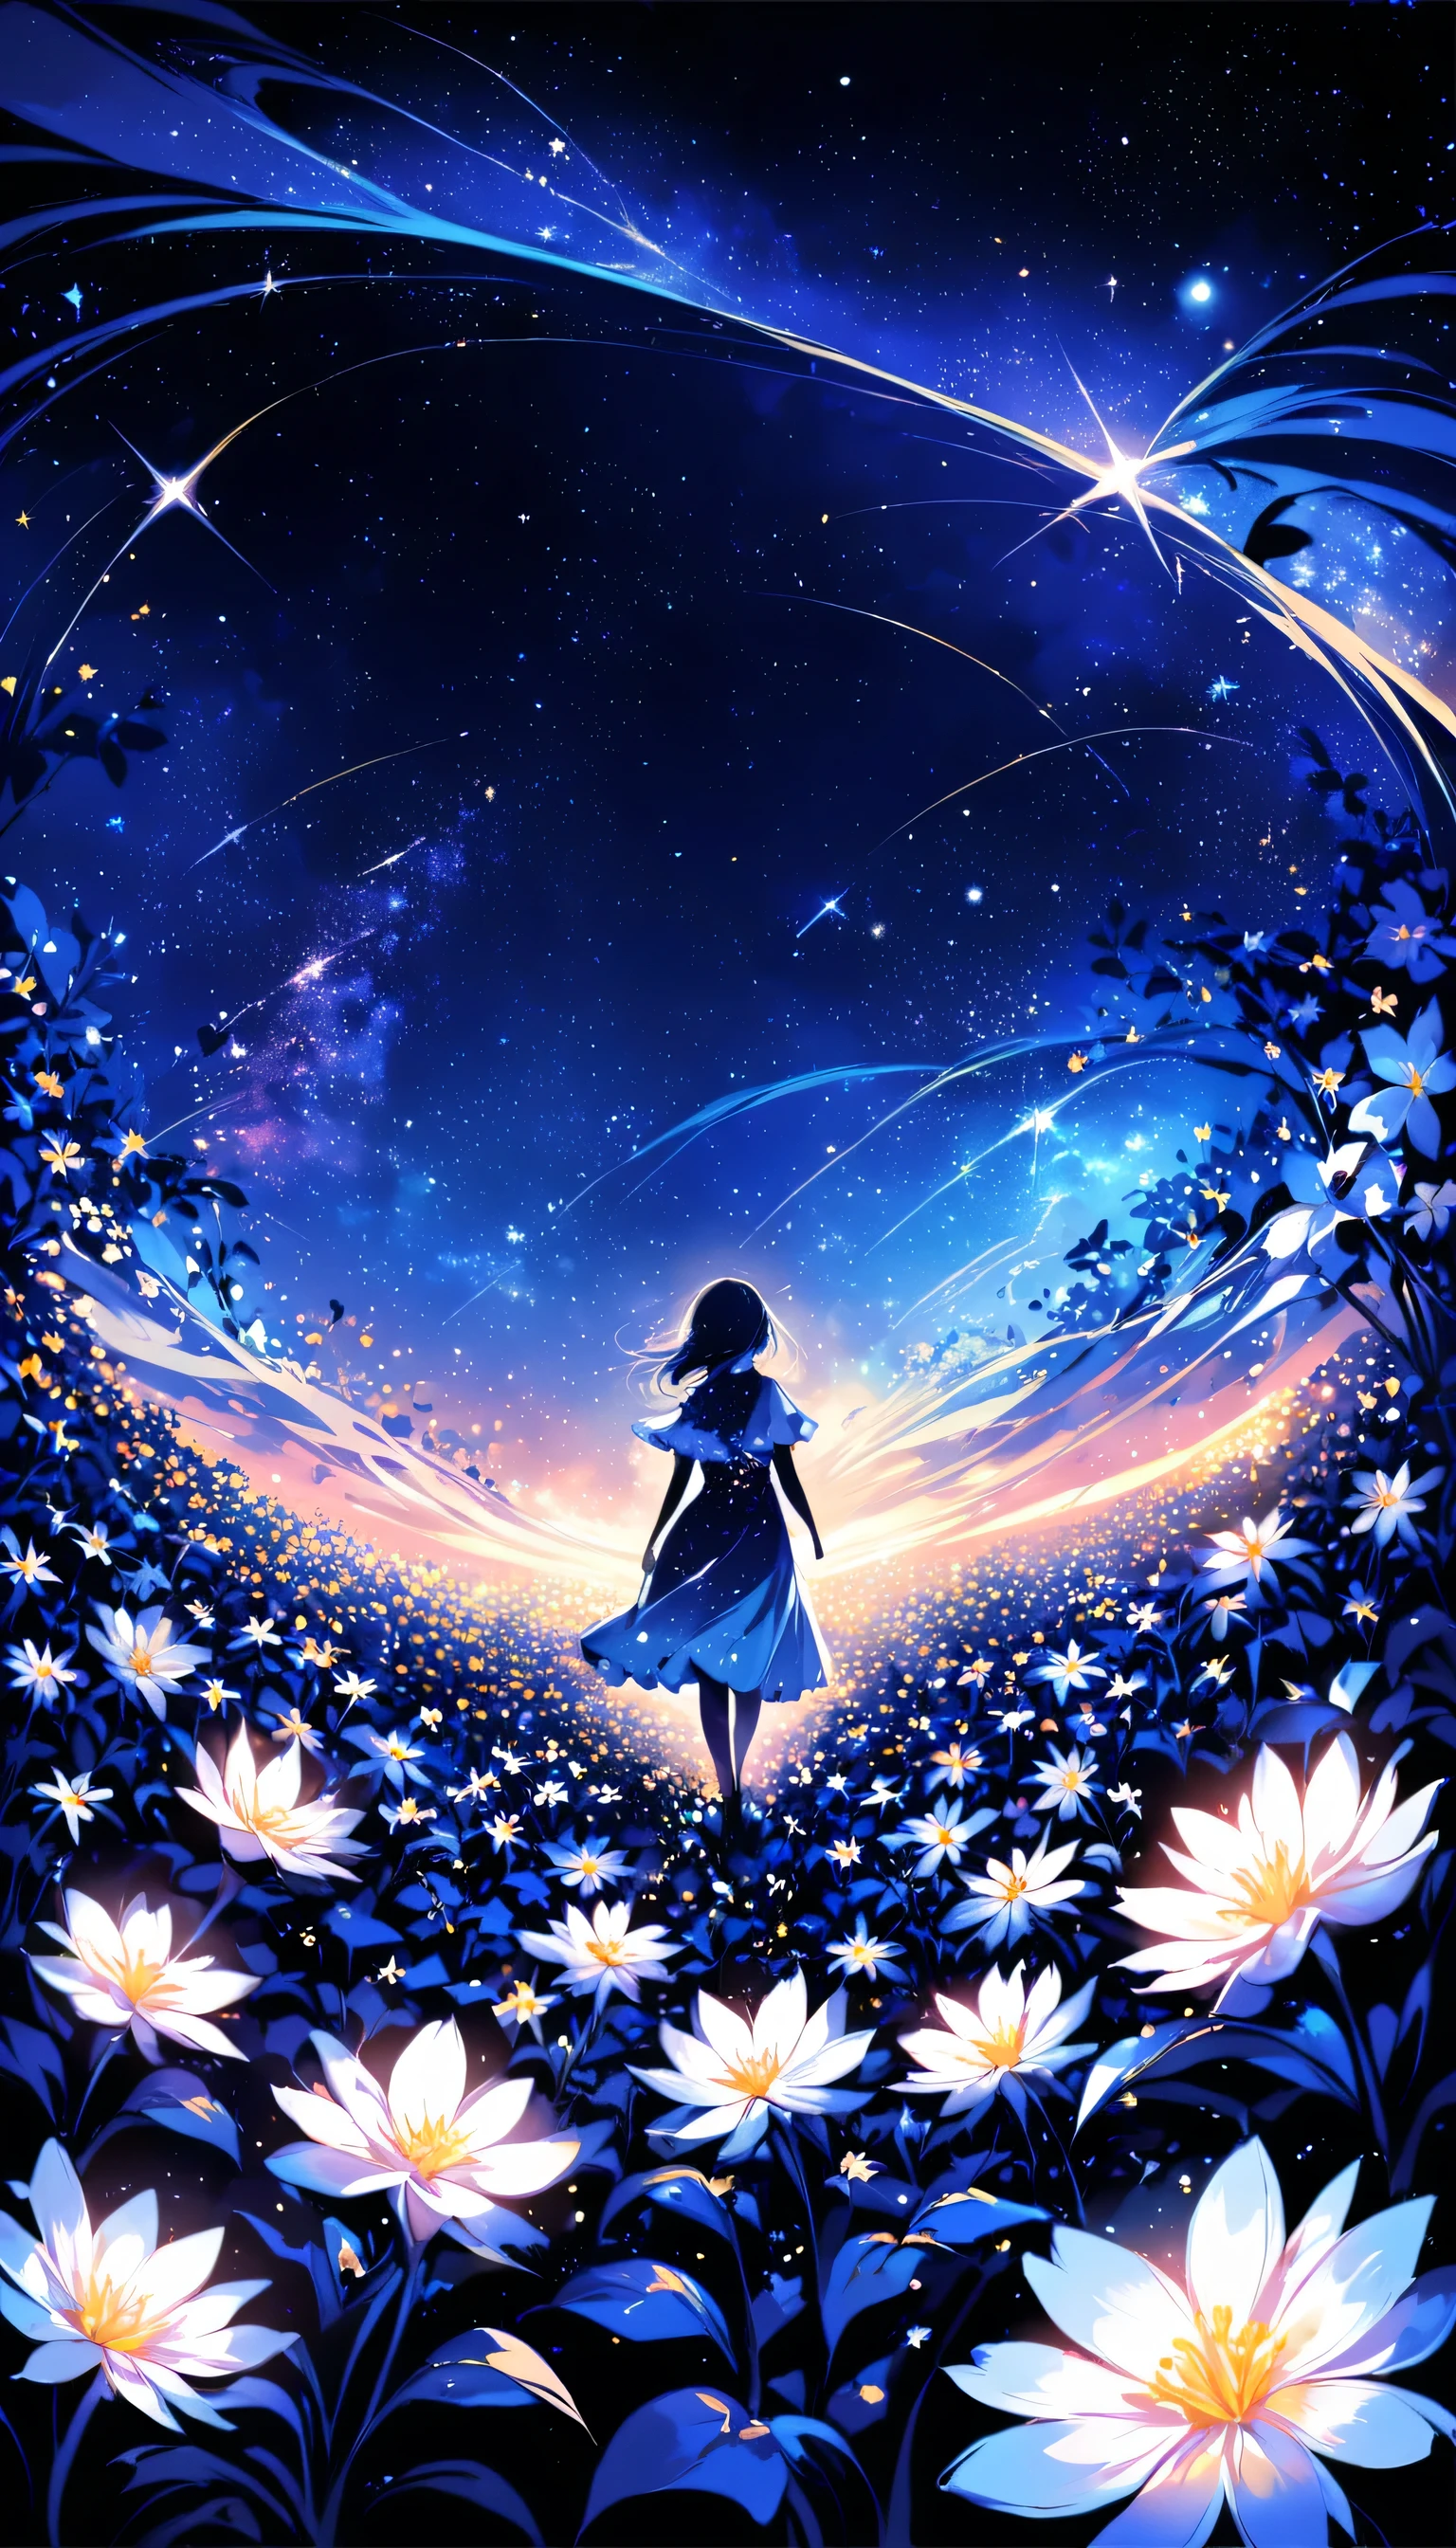 There is a girl 꽃밭에 서서 looking up at the sky, a girl 꽃밭에 서서, 꽃밭을 산책하는 소녀, 나는 꿈같은 원더랜드에서 길을 잃었어요, 꽃밭에 서서, 놀라운 디지털 페인팅, 하늘은 점차 맑아지고, 별이 빛나는 하늘은 점차々~에서 멀어지다  